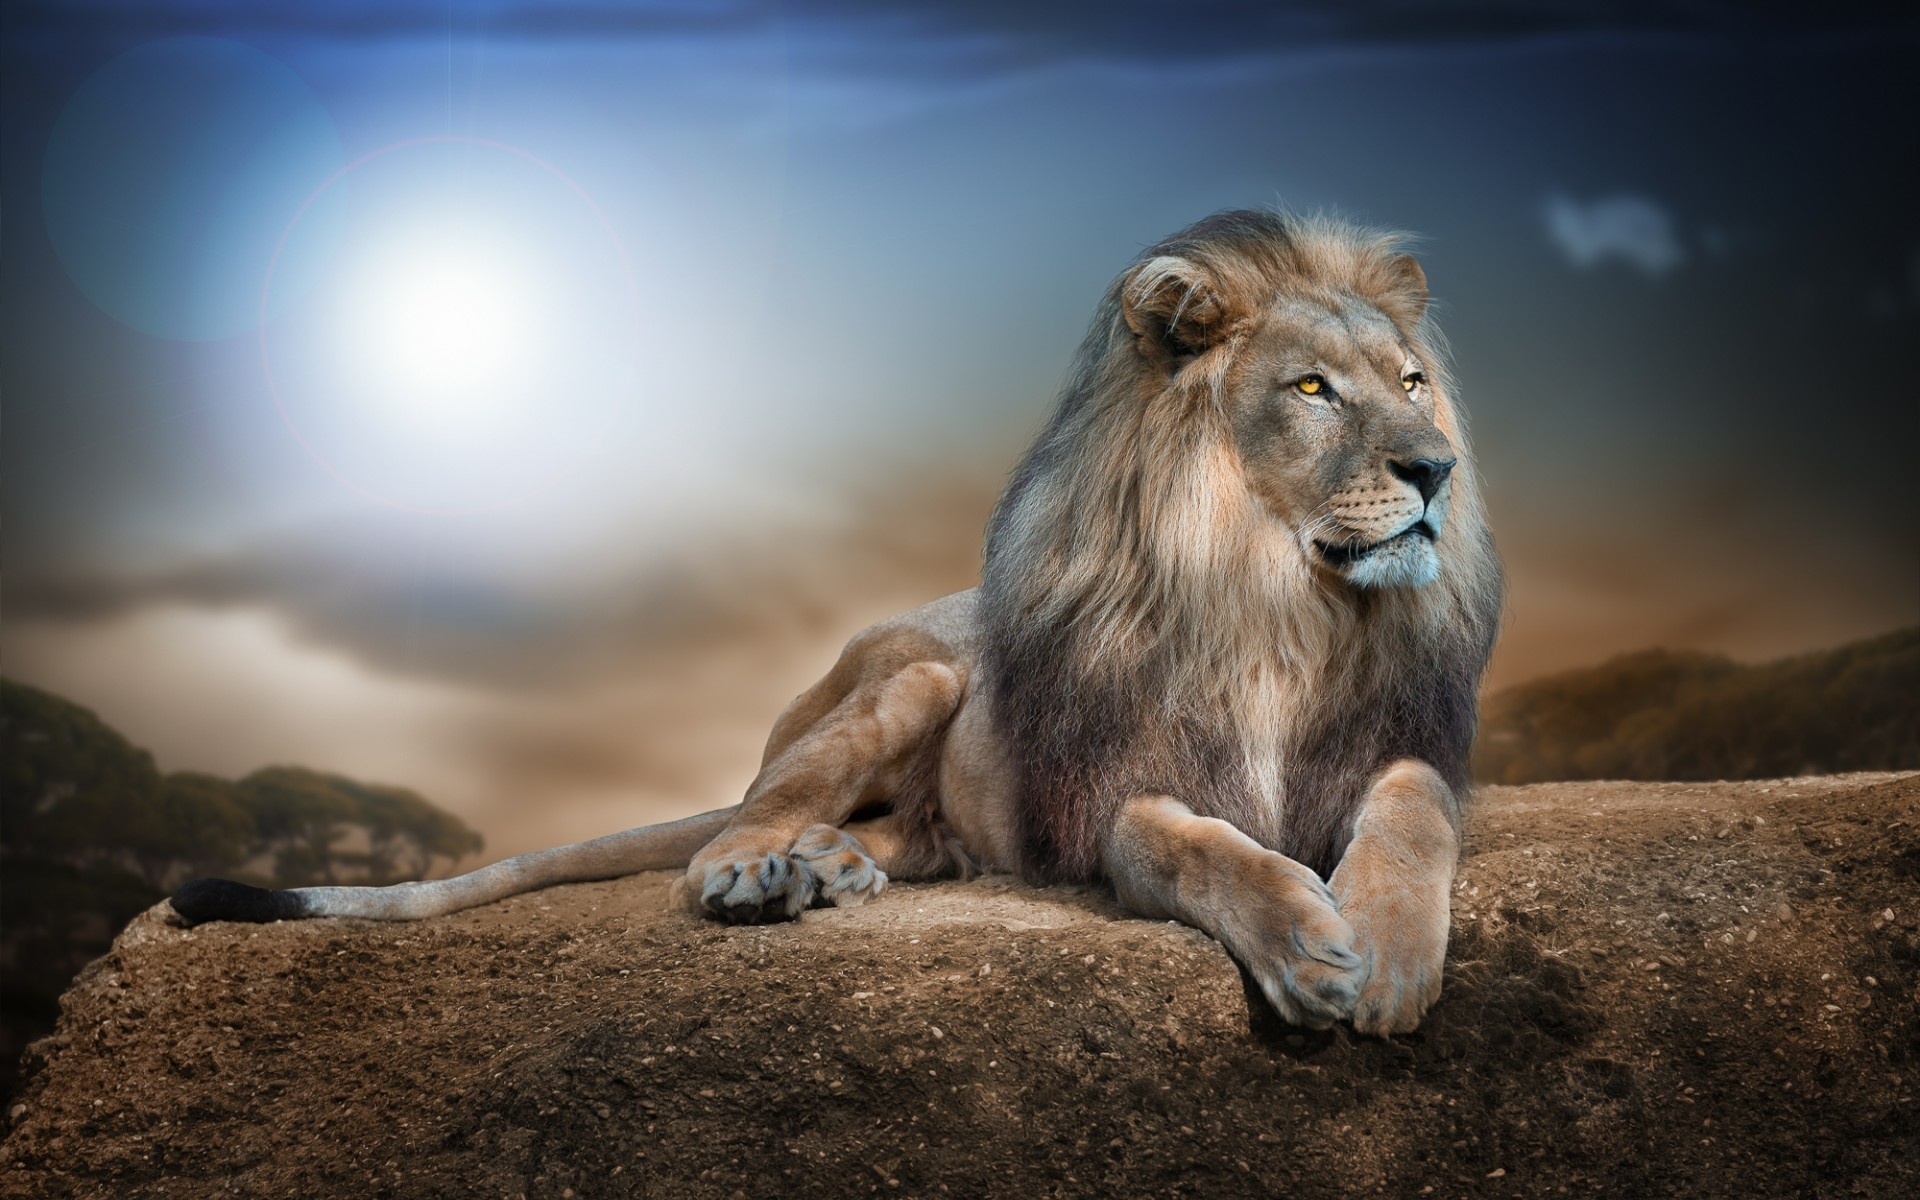 Gorgeous Lion, Fierce, Strong wallpaper